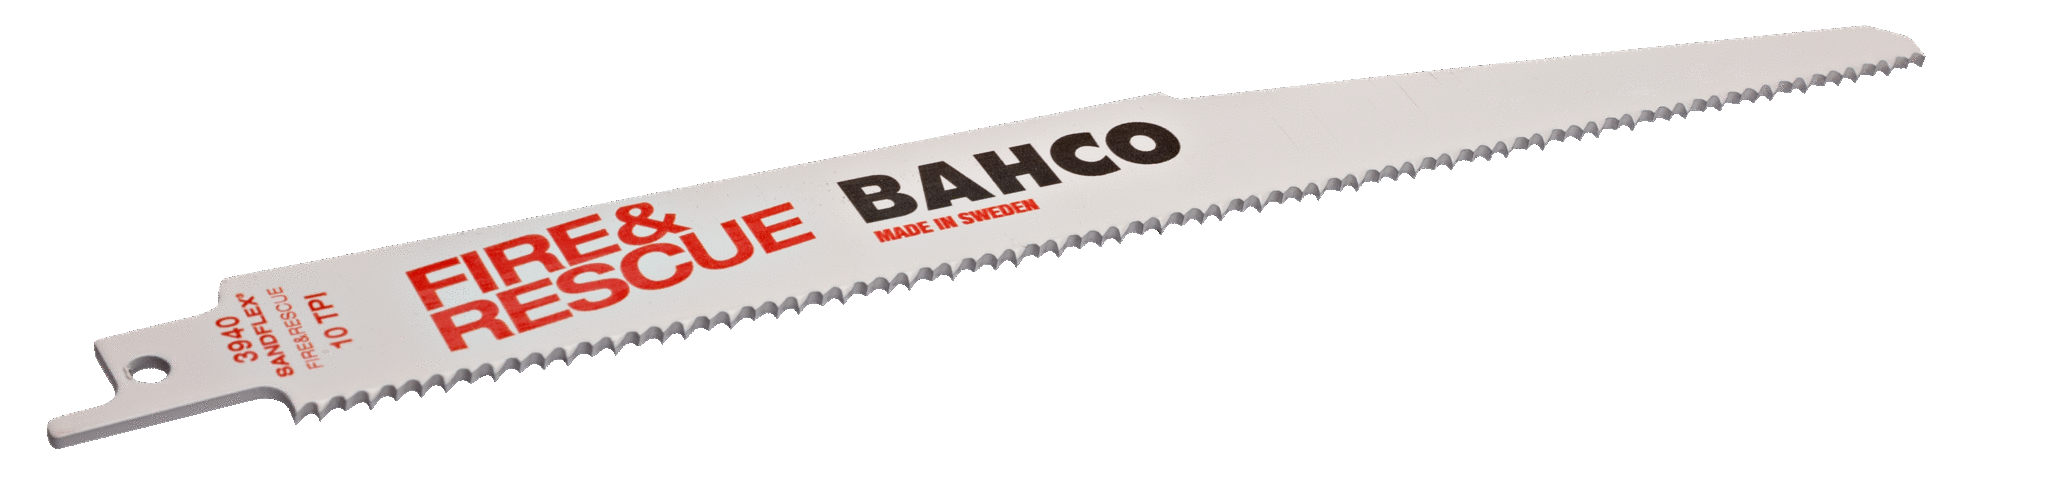 Bahco Sandflex® tigersågblad i bimetall för räddningspersonal, 10 tdr/tum - 228 mm - 2 st/hängförpackad